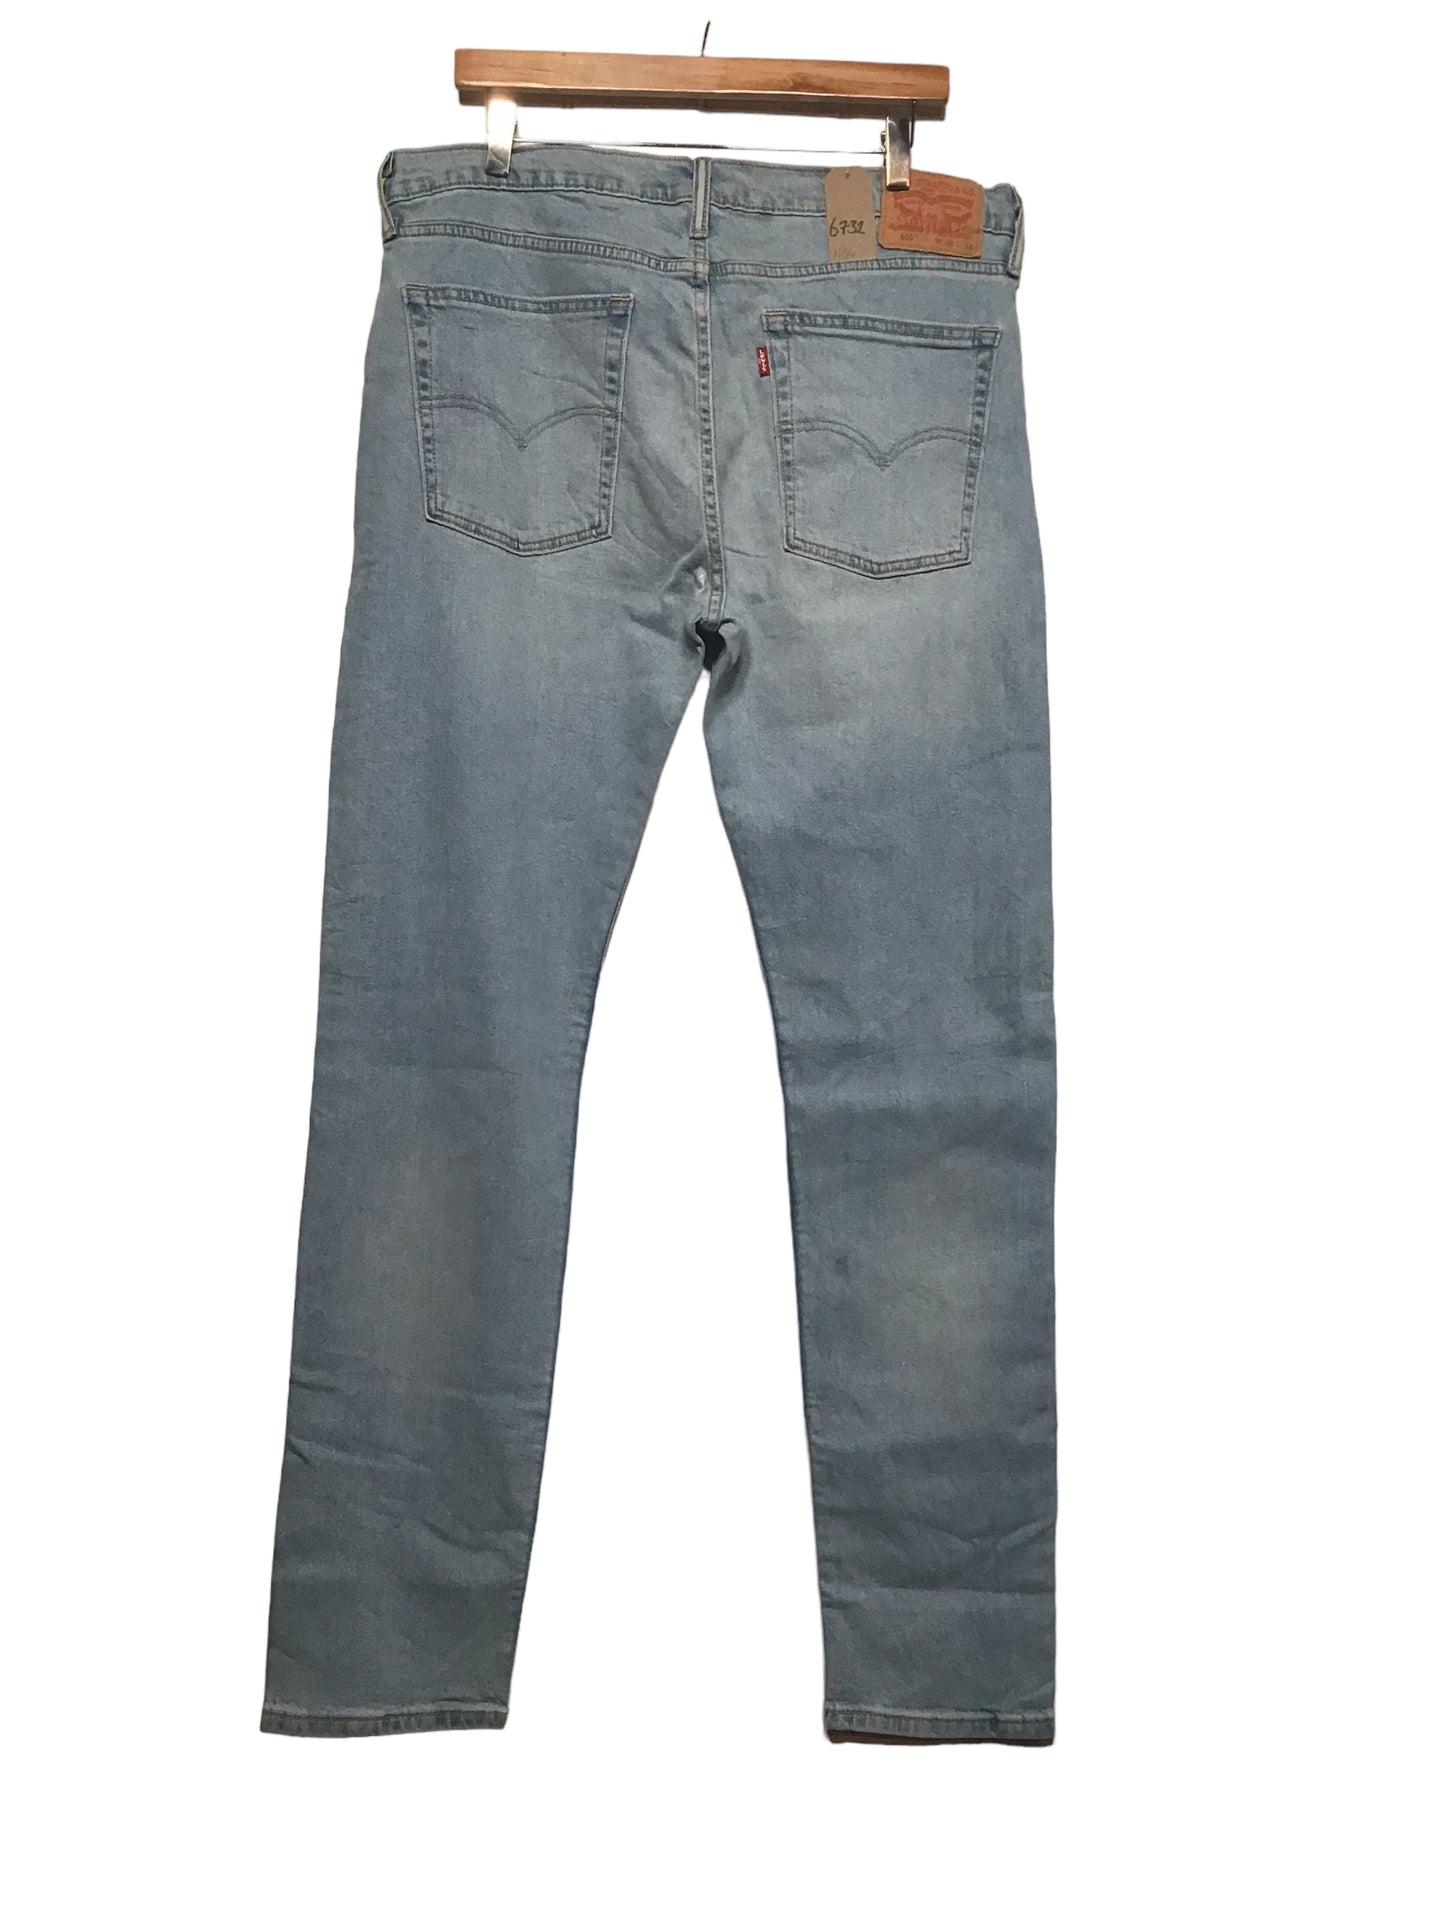 Levi 510 Jeans (36x34)